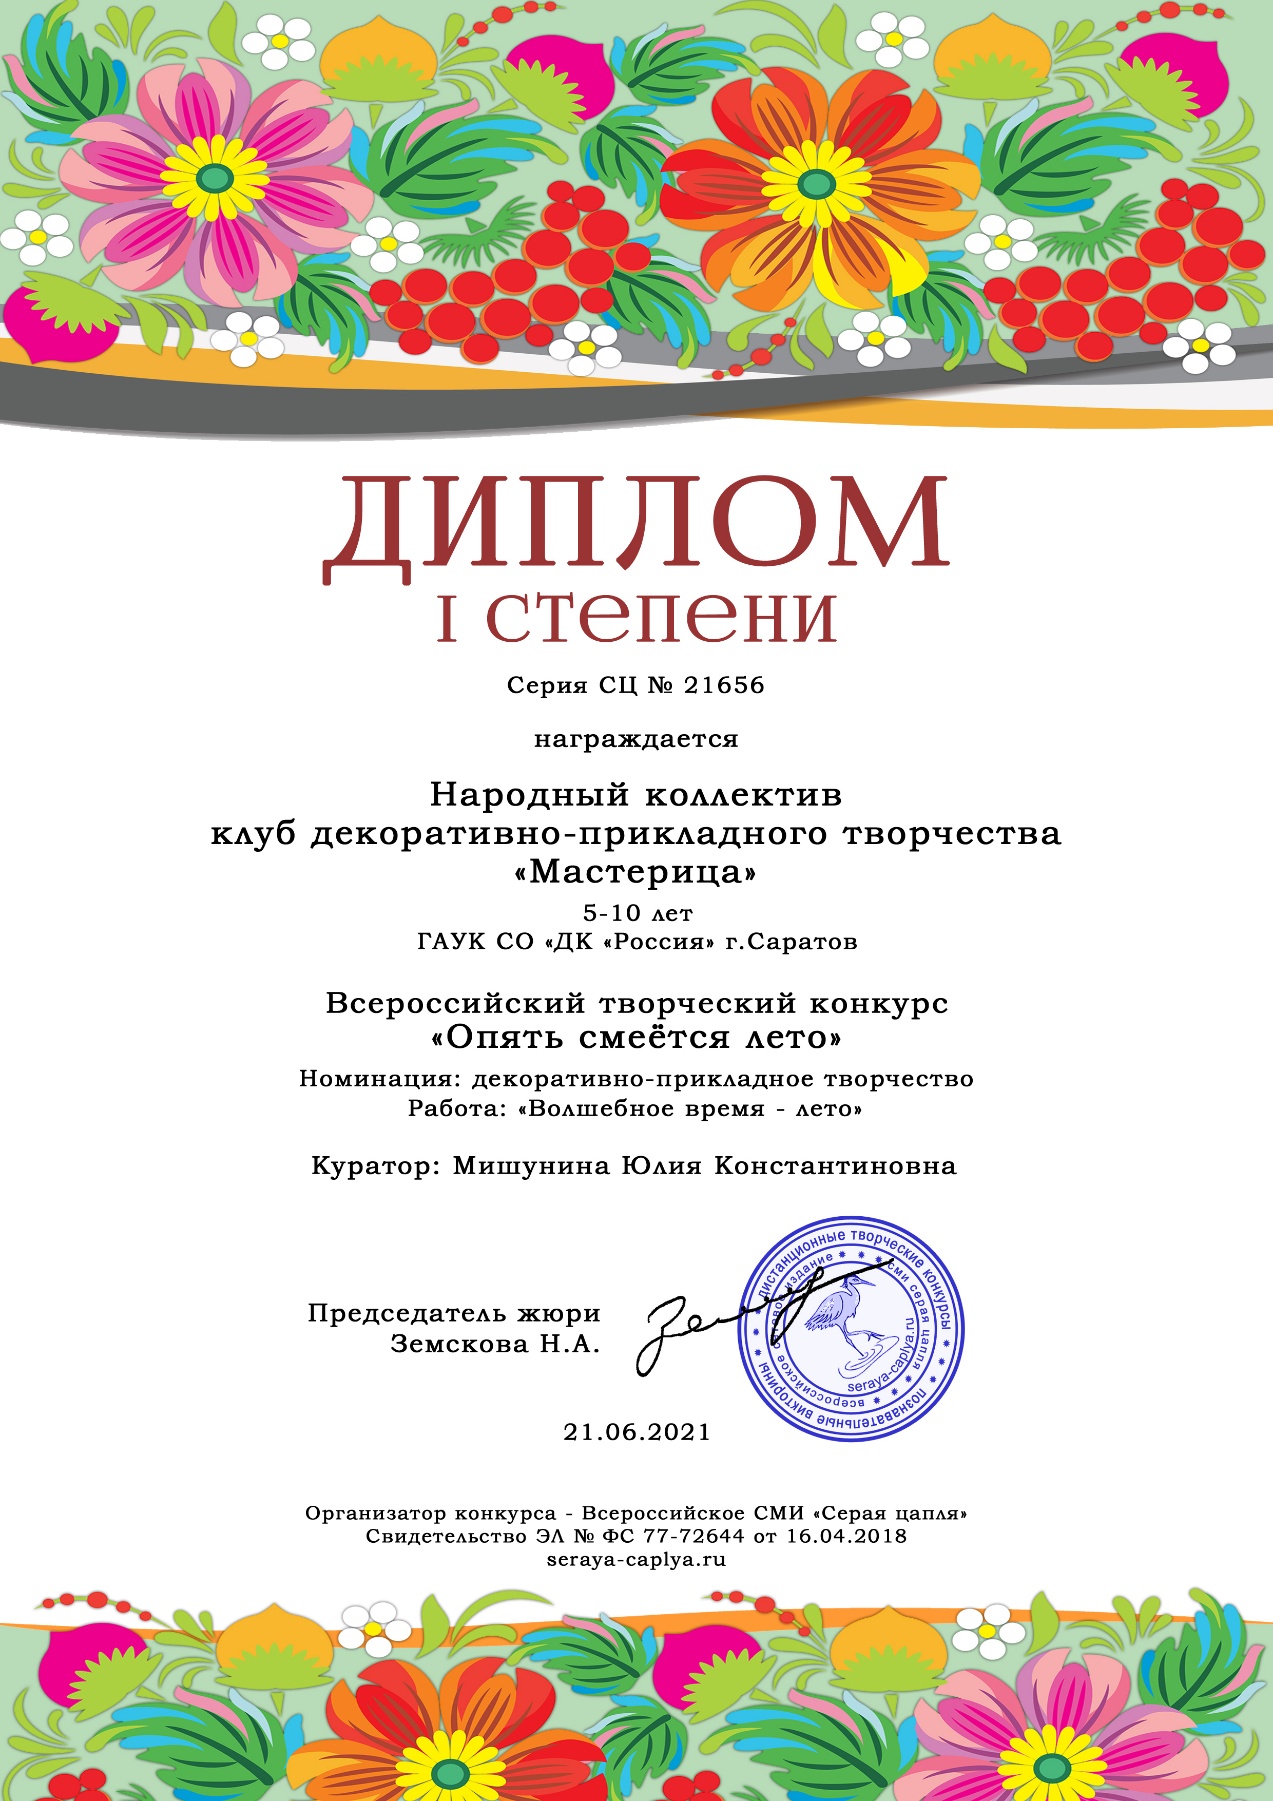 Поздравляем клуб ДПИ «Мастерица» с победой во всероссийском конкурсе!